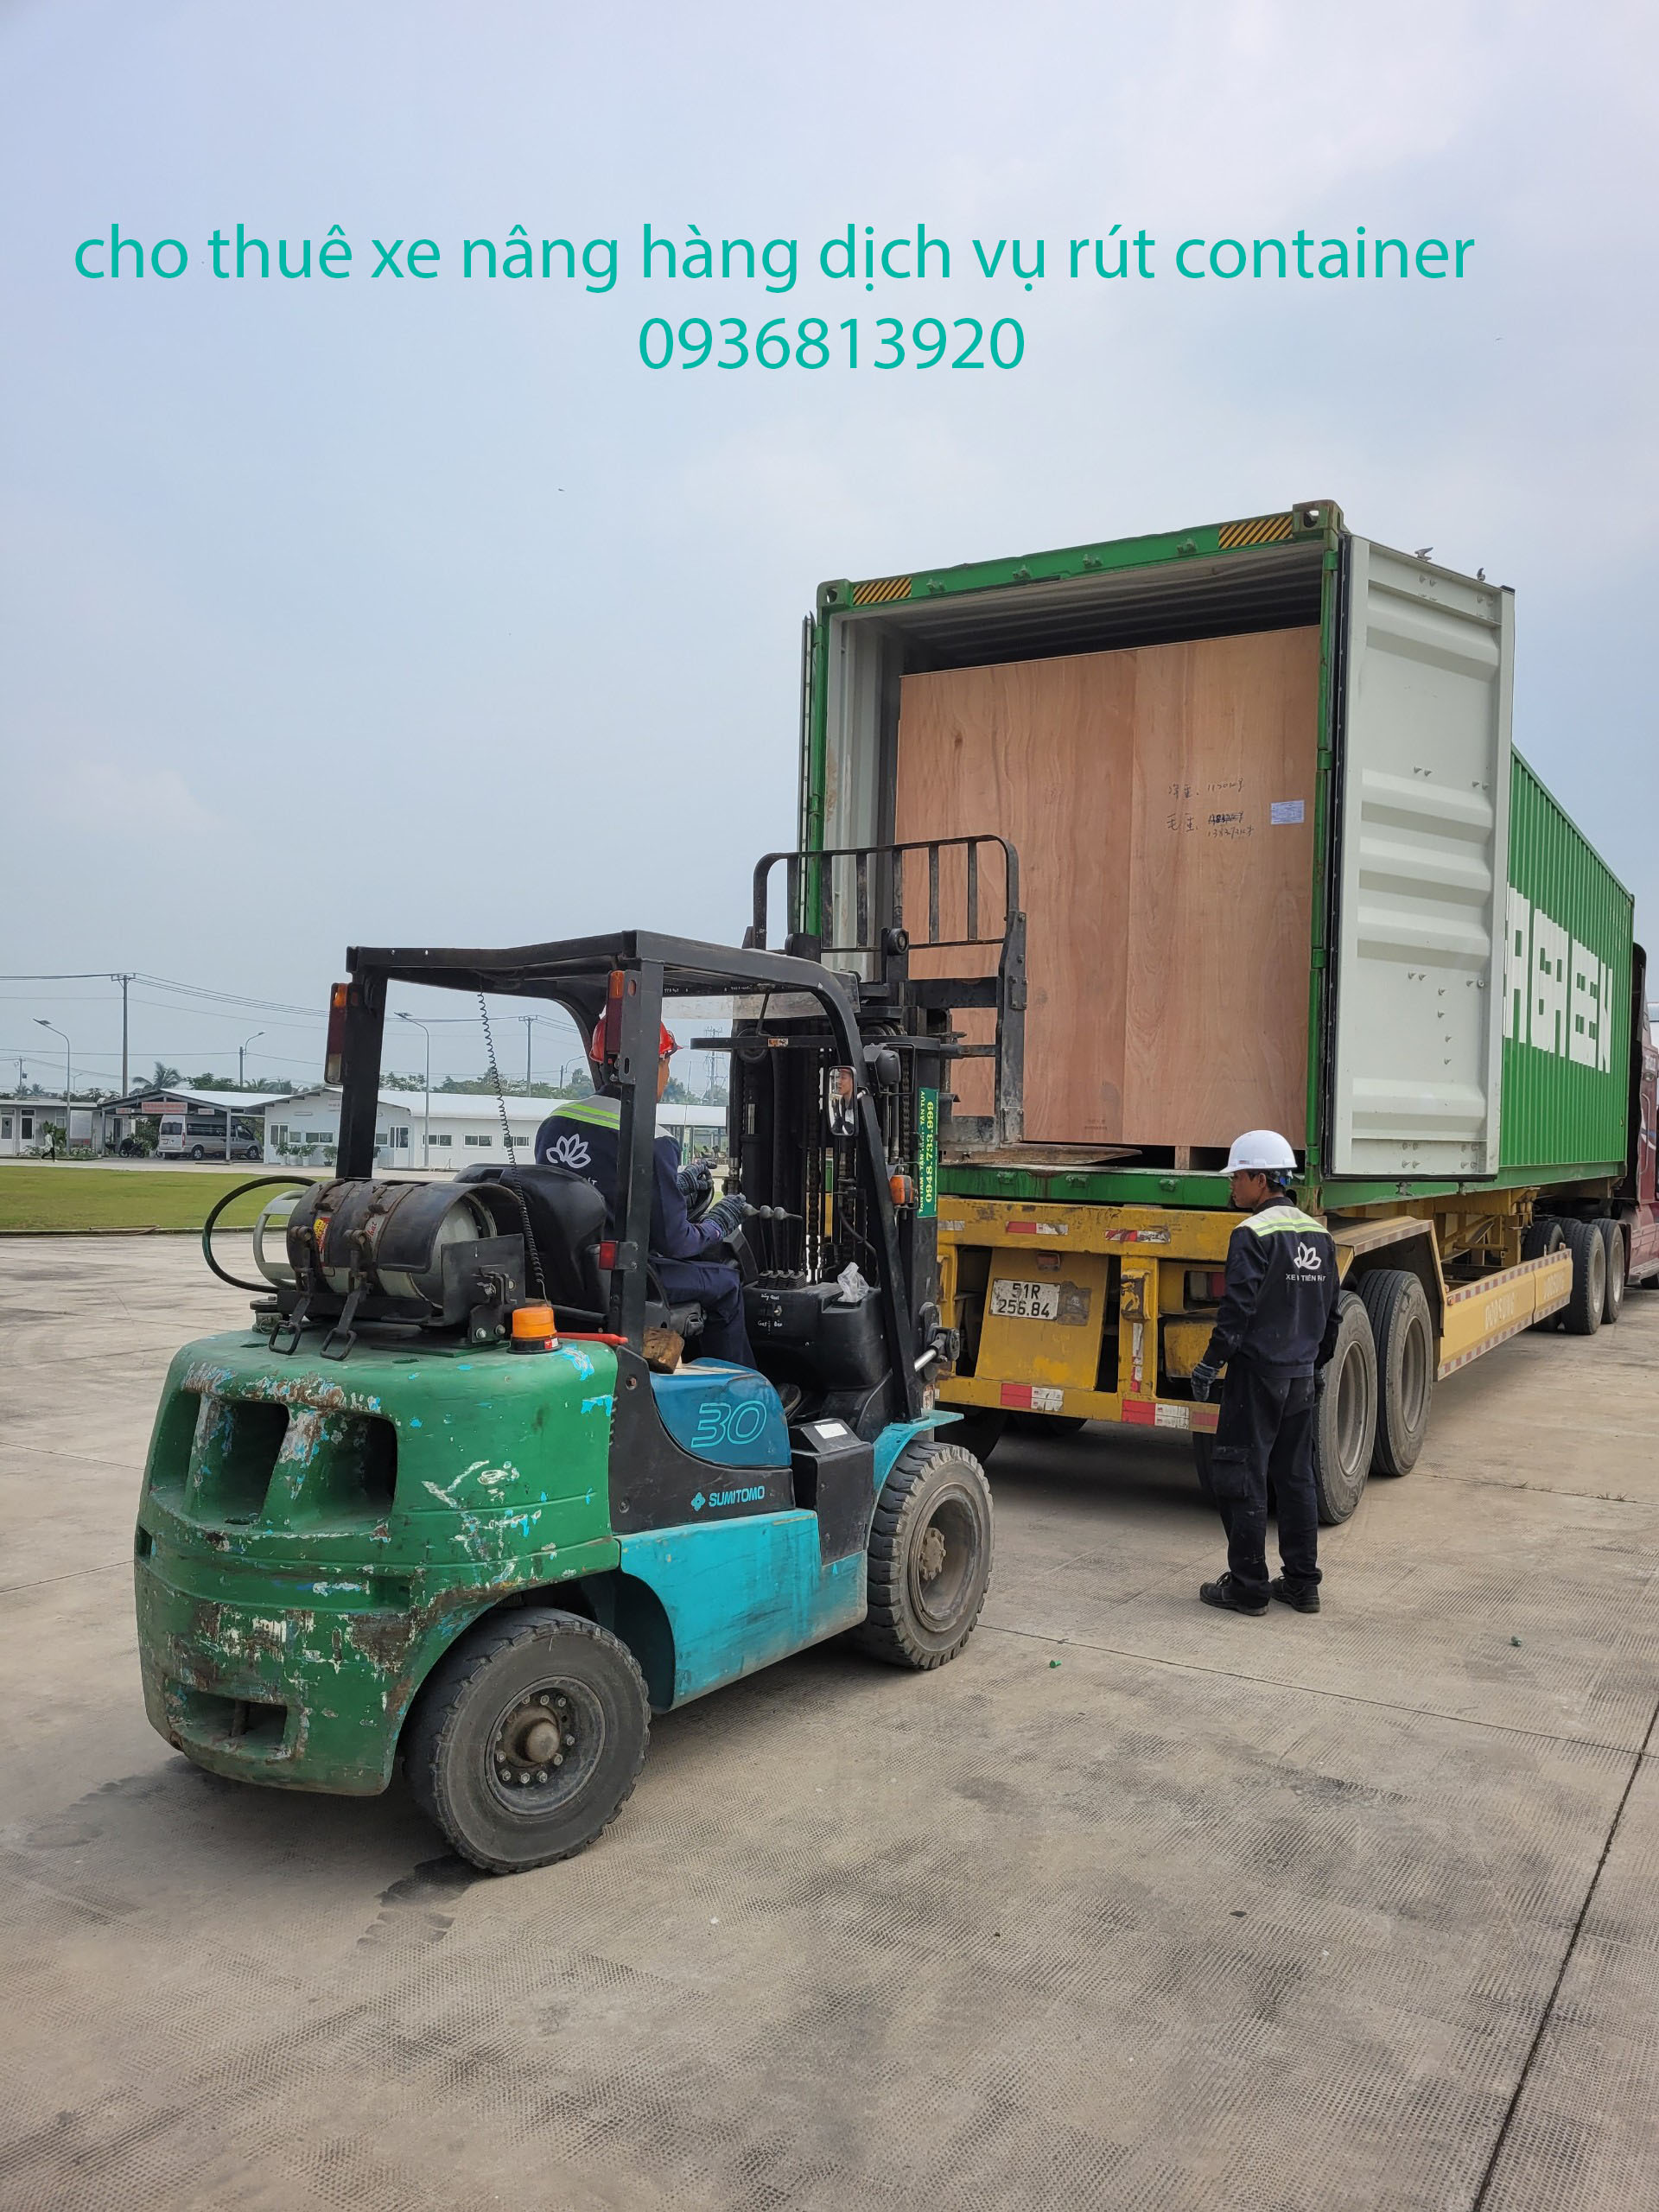 cho thuê xe nâng hàng rút container tại Biên Hòa Đồng Nai